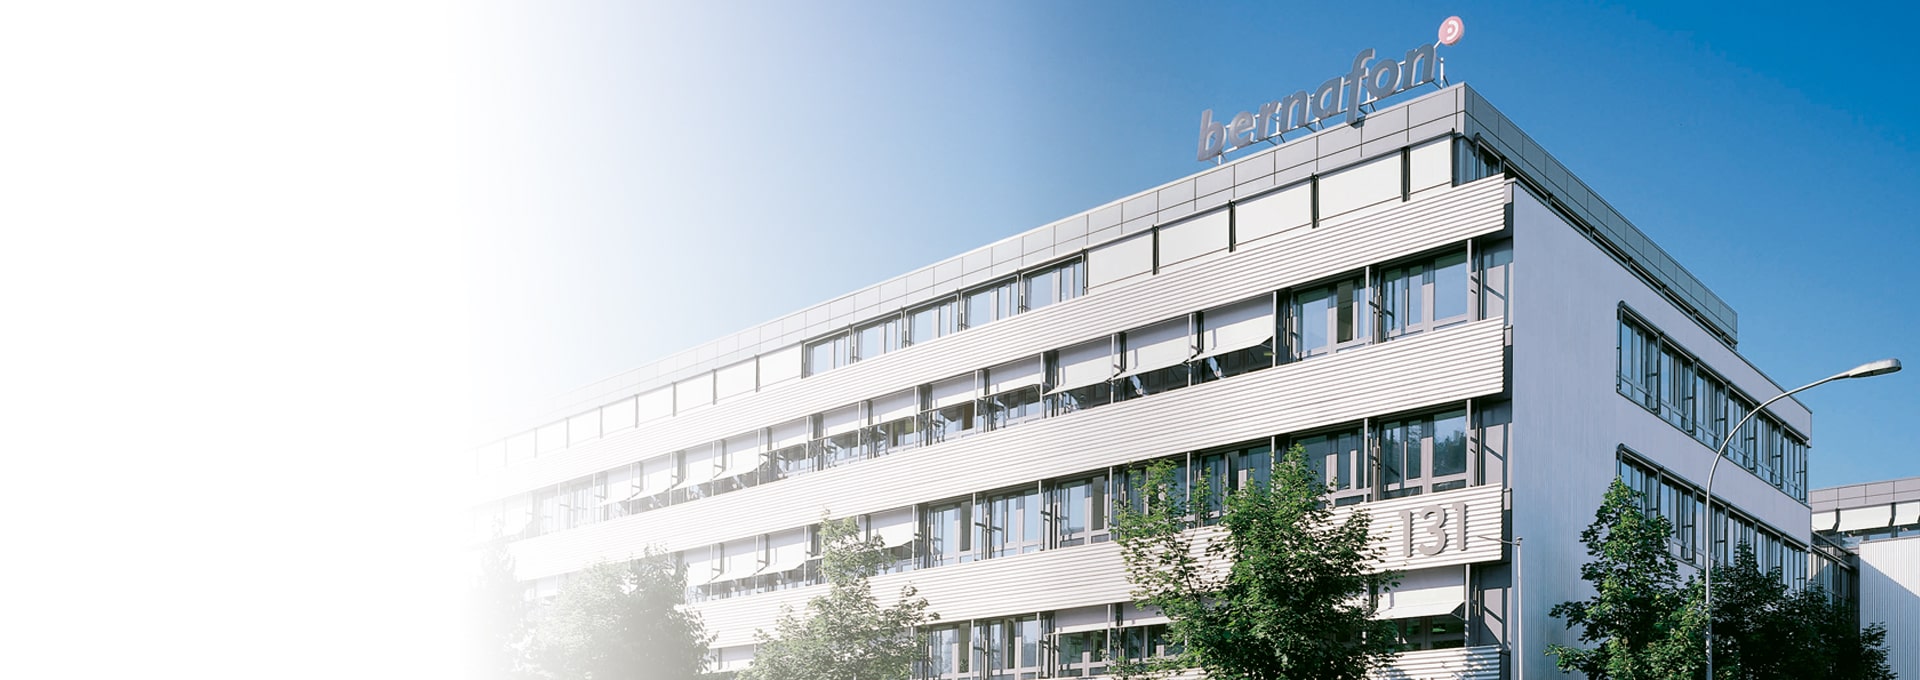 Kuva Bernafonin globaalin pääkonttorin rakennuksesta Bernissä, Sveitsissä aurinkoisena päivänä